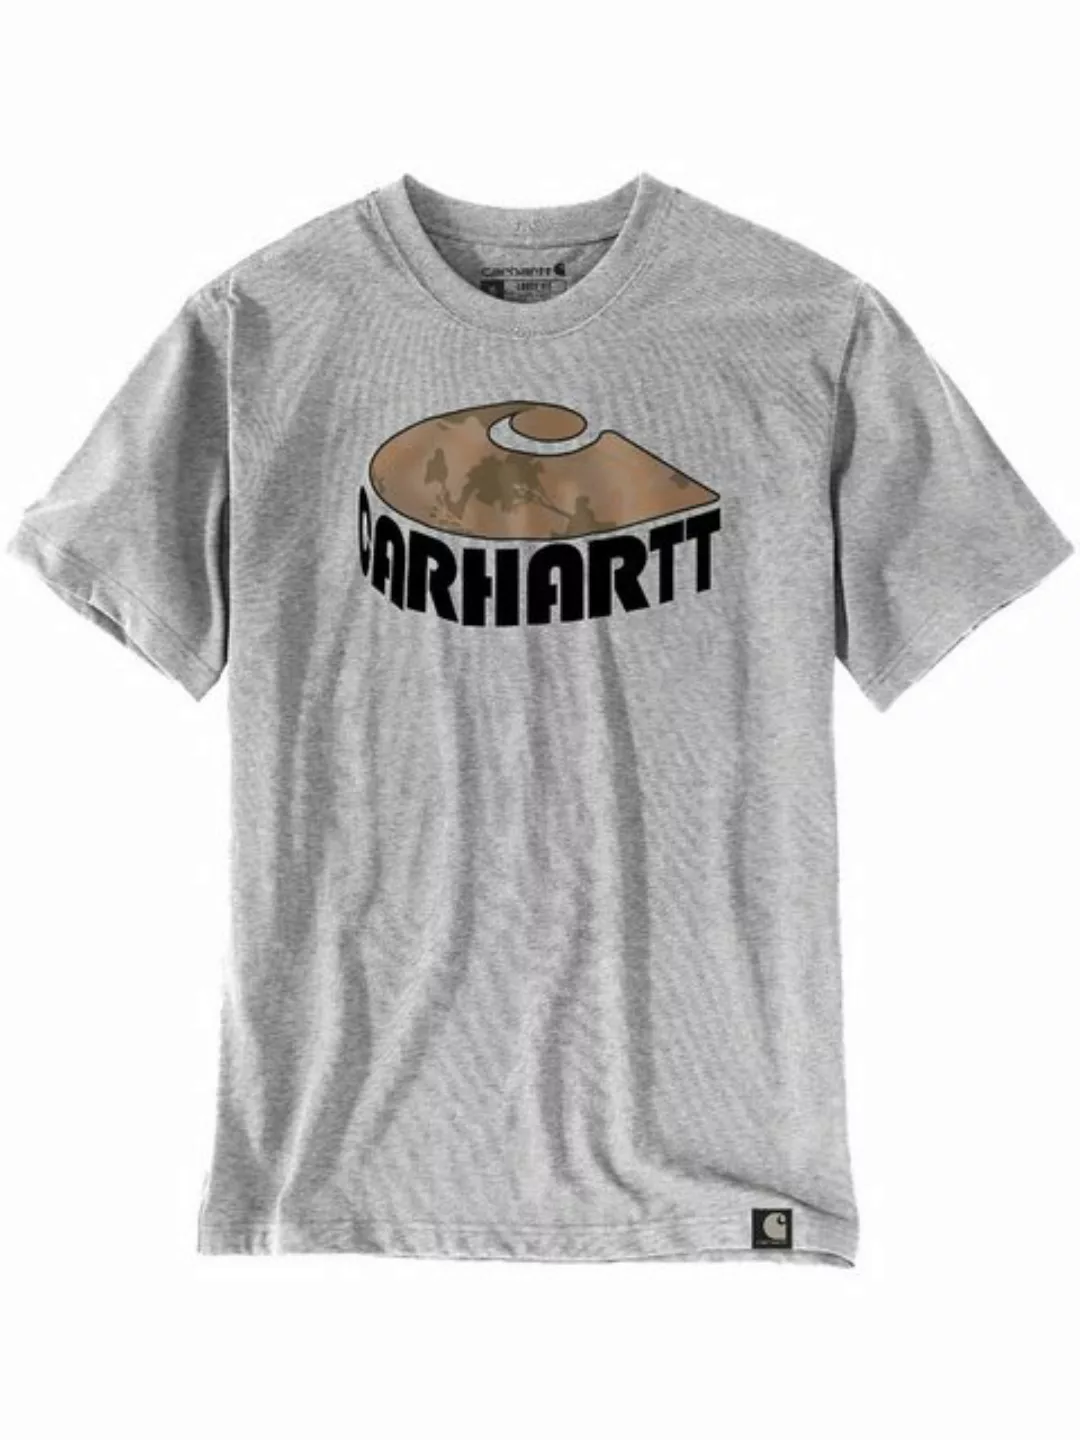 Carhartt T-Shirt 106155-HGY Carhartt Camo günstig online kaufen